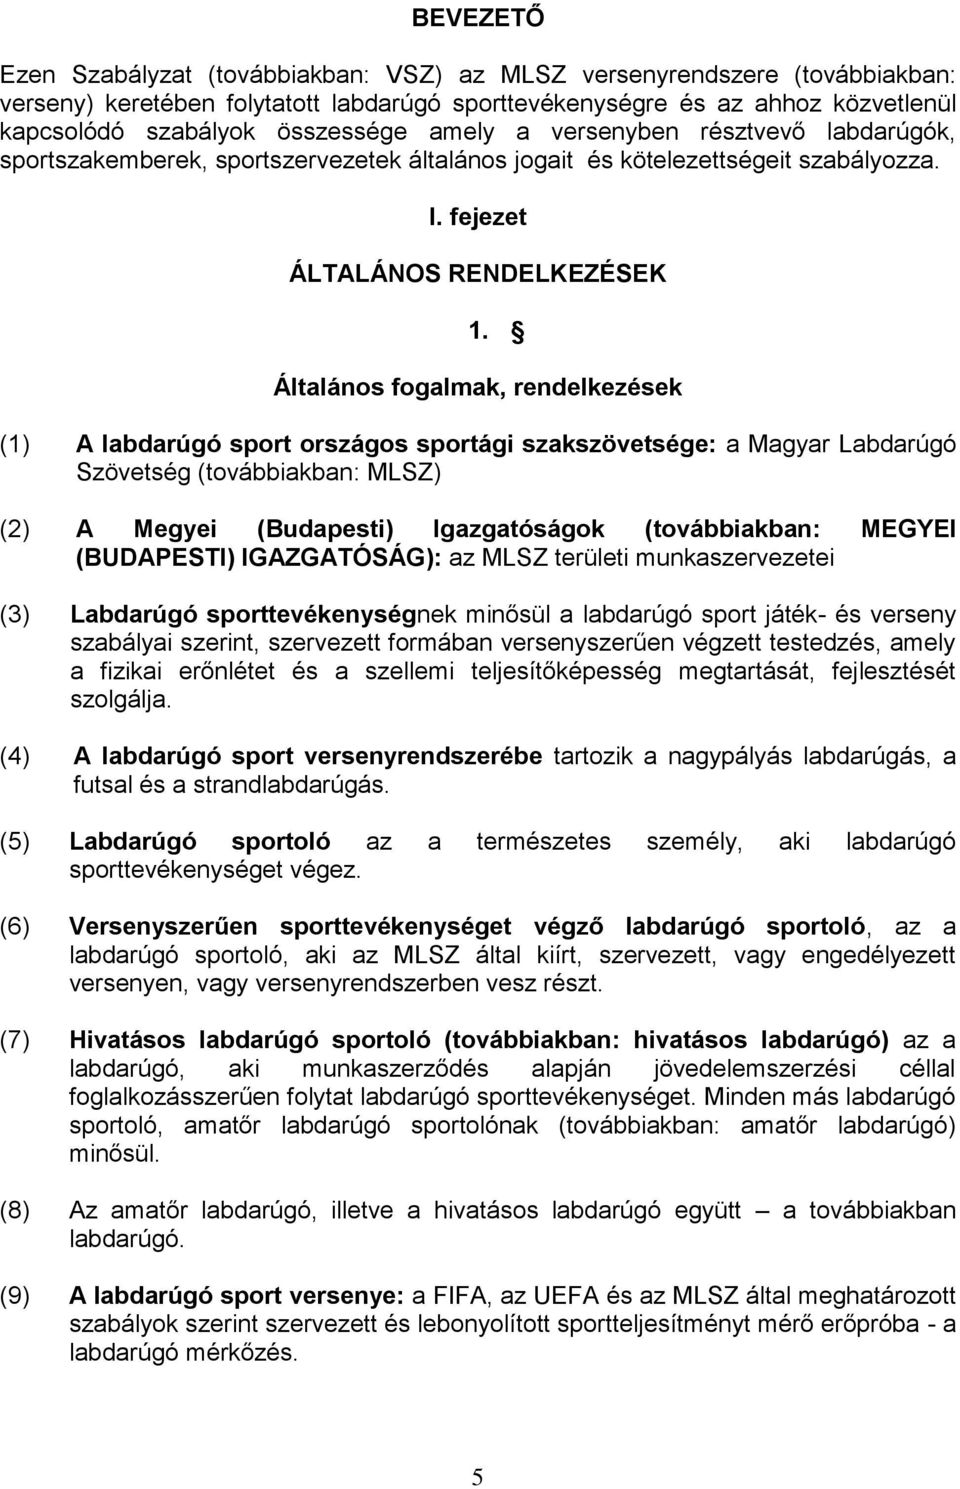 Általános fogalmak, rendelkezések (1) A labdarúgó sport országos sportági szakszövetsége: a Magyar Labdarúgó Szövetség (továbbiakban: MLSZ) (2) A Megyei (Budapesti) Igazgatóságok (továbbiakban: